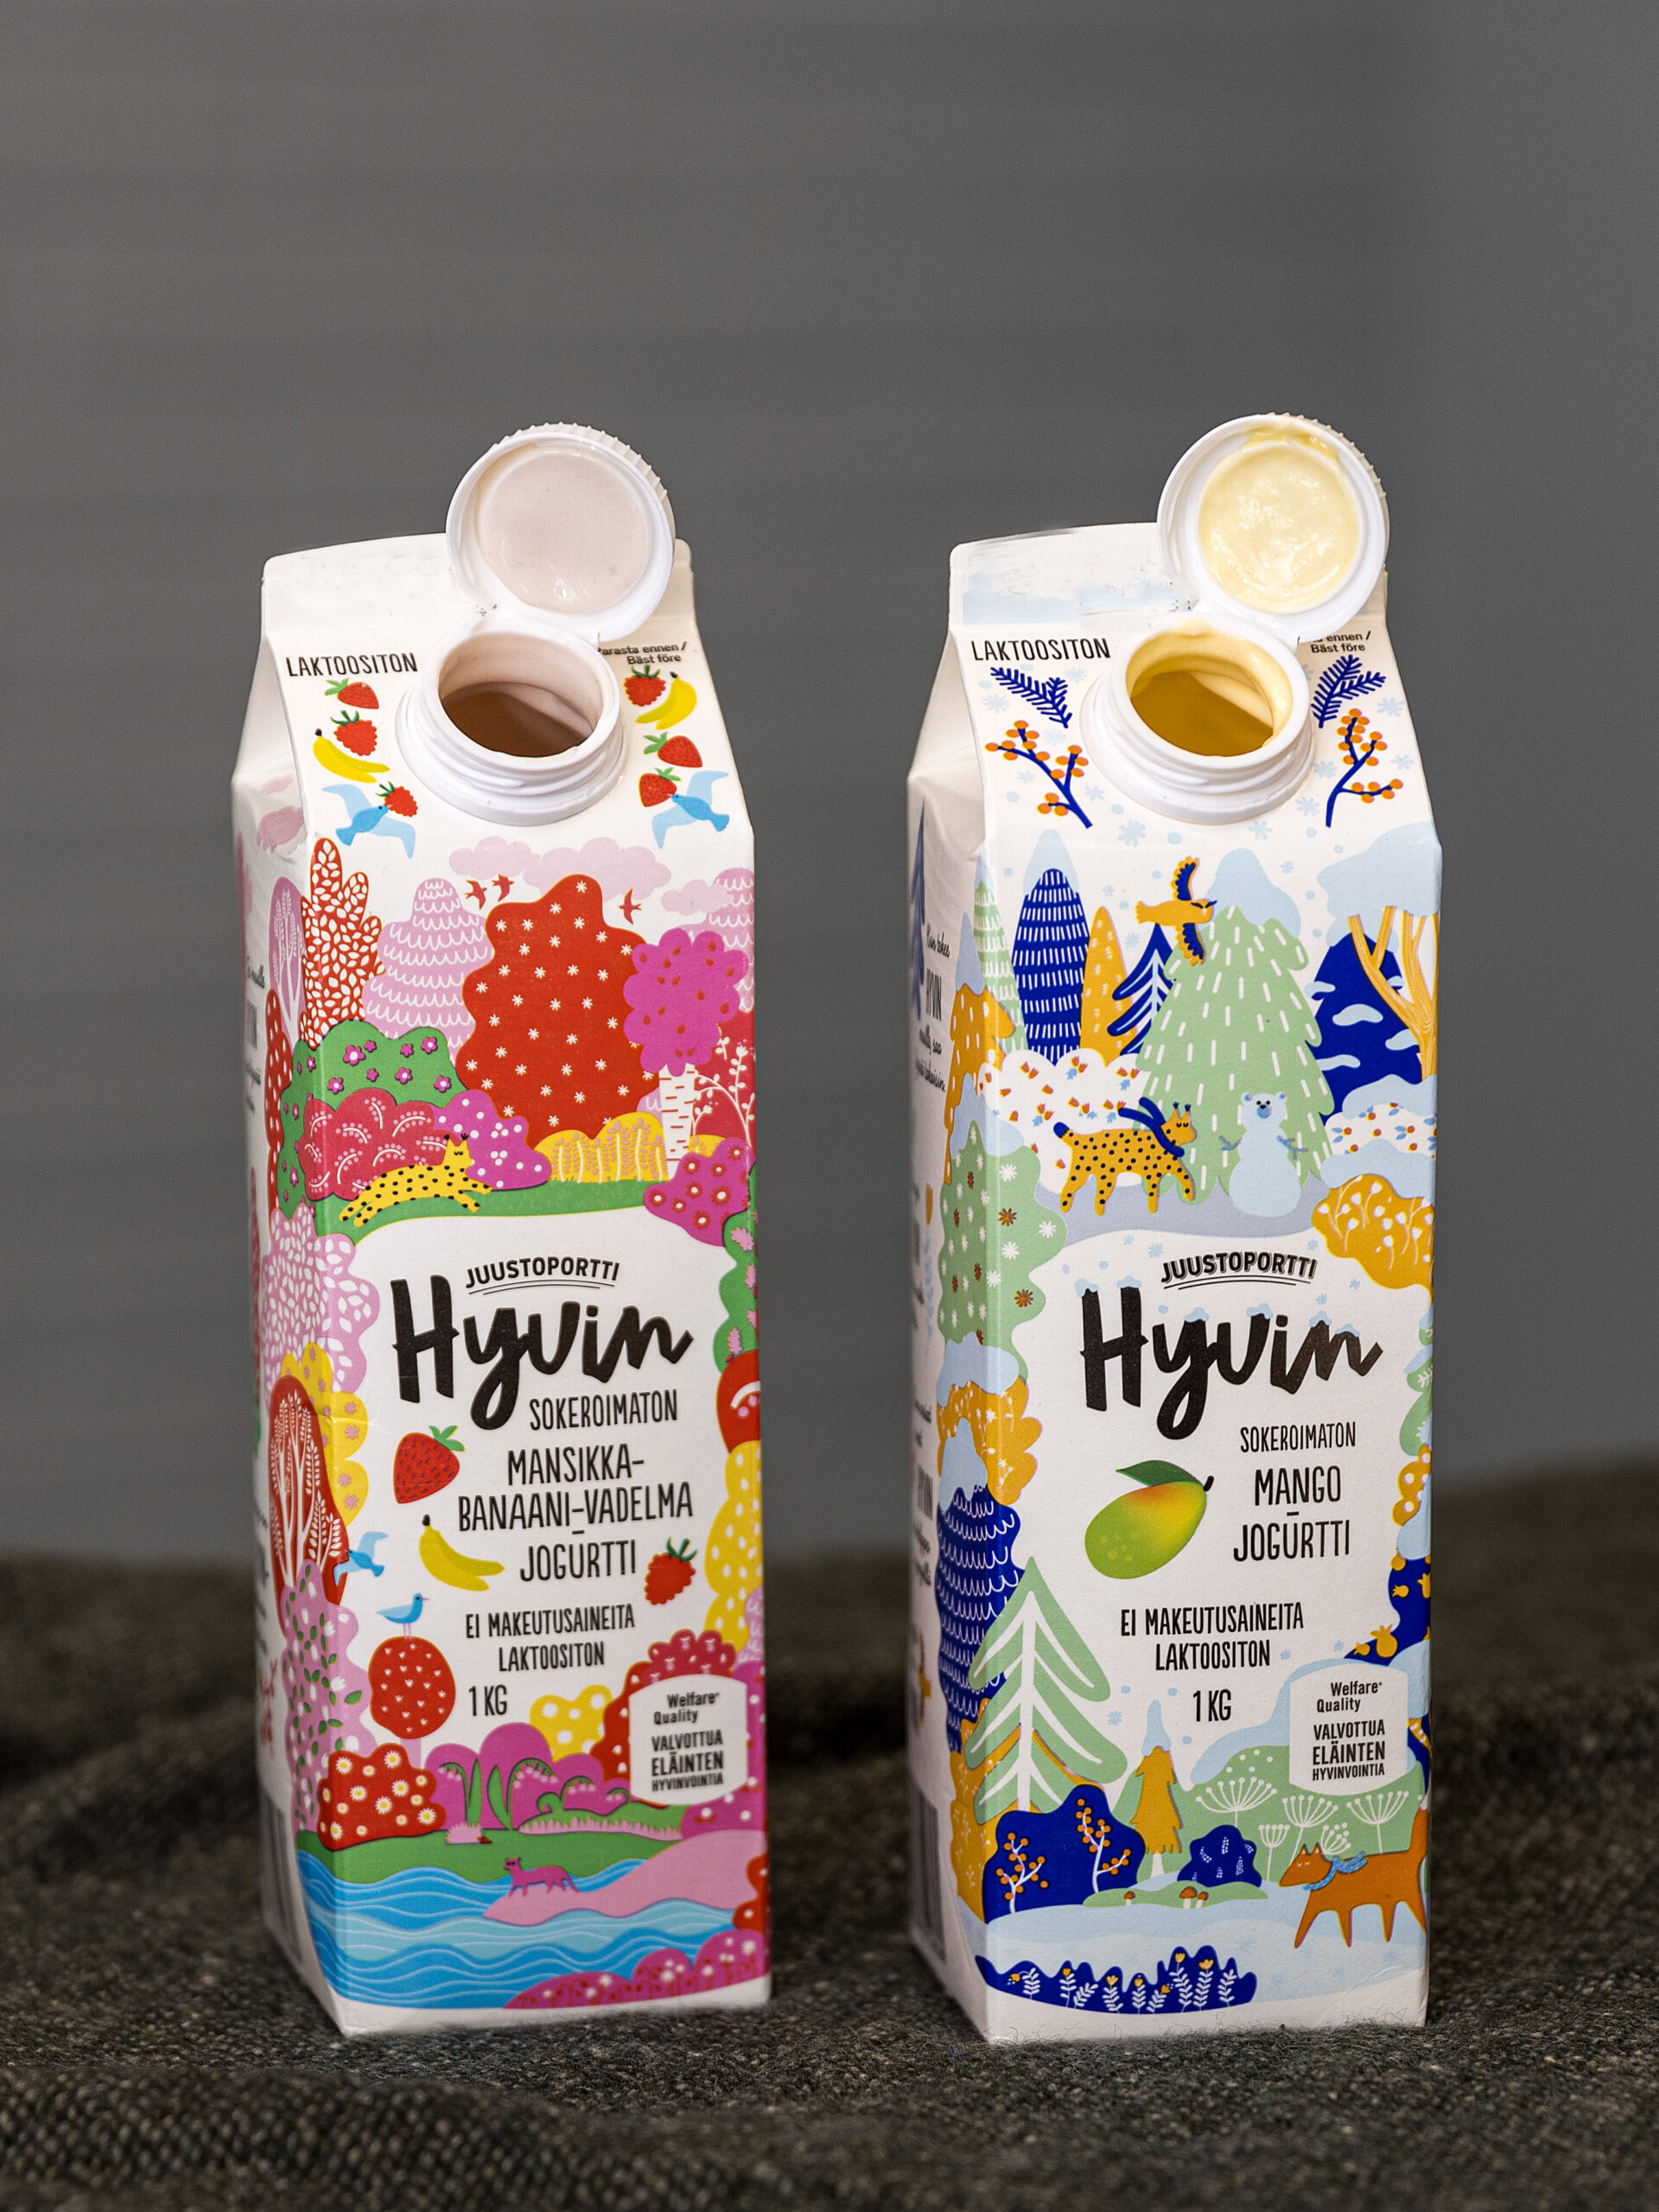 Juustoportin jogurteissa on nykyään uudenlaisia korkkeja, jotka jäävät kiinni pakkaukseen. Korkit eivät irtoa avattaessa ja ne lajitellaan jatkossa yhdessä kartonkipakkausten kanssa.